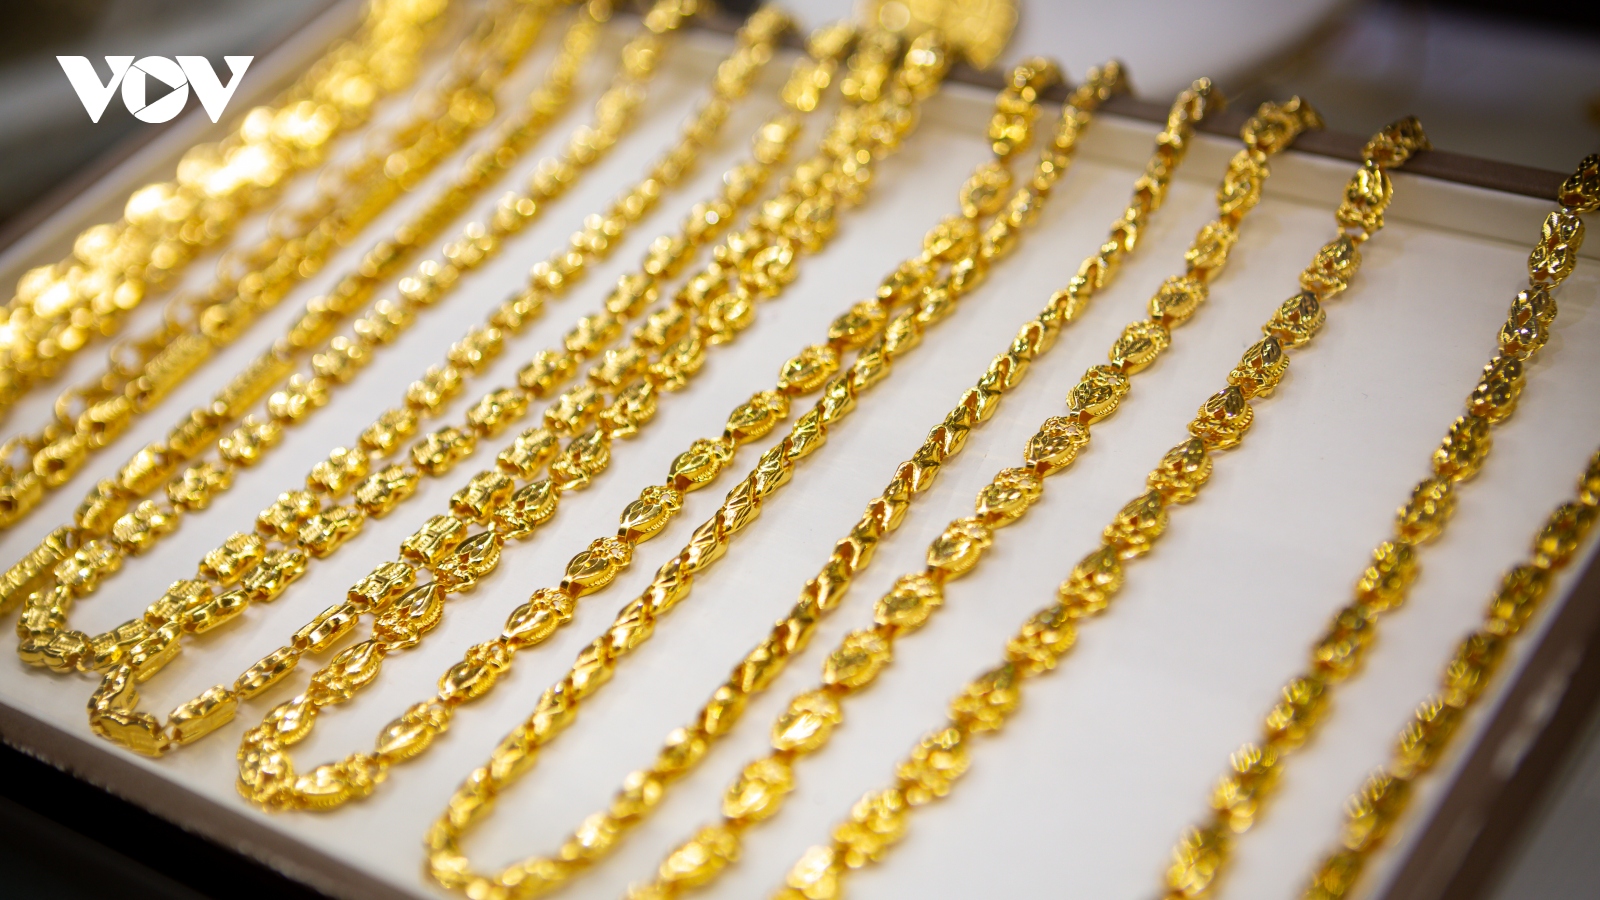 Giá vàng hôm nay 24/1: Vàng SJC tăng lên mức 76,7 triệu đồng/lượng